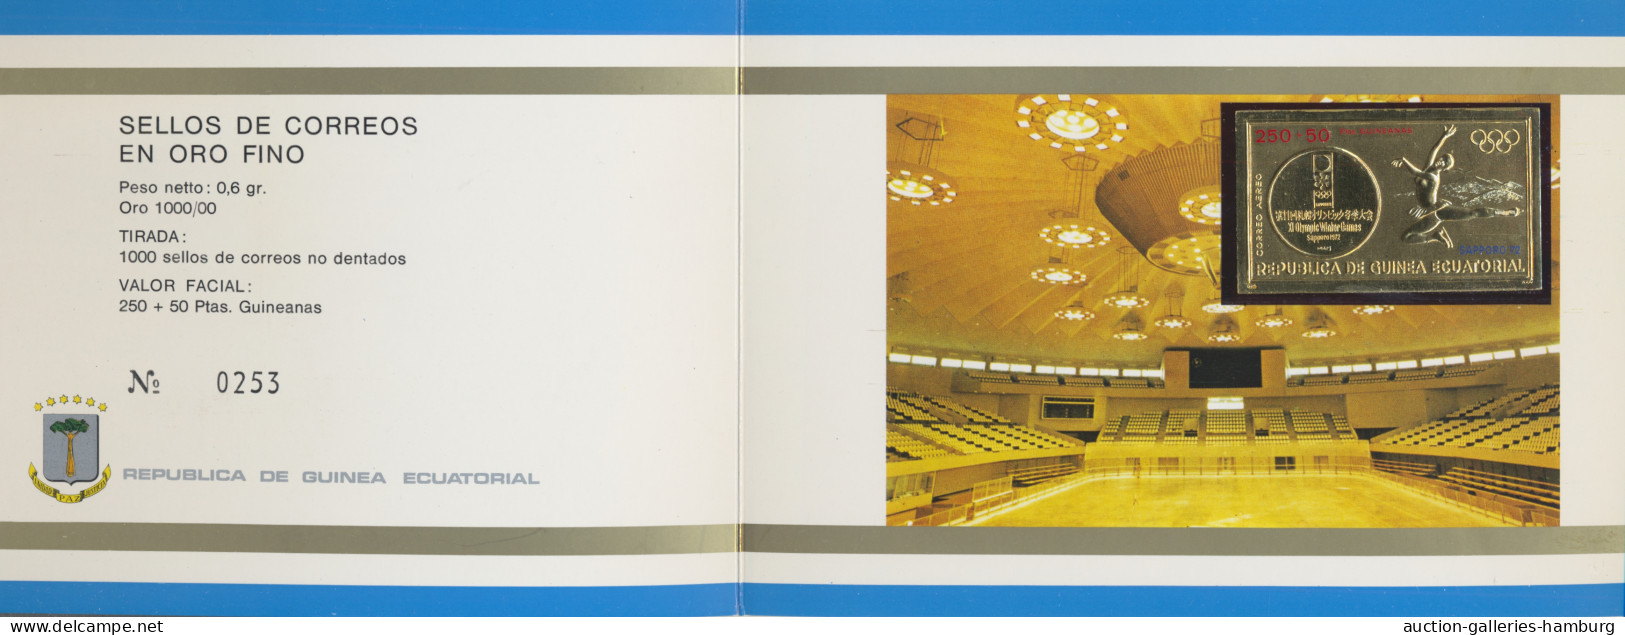 Thematics: Olympic Games: 1972, postfrische Sammlung der Olympischen Spiele 1972